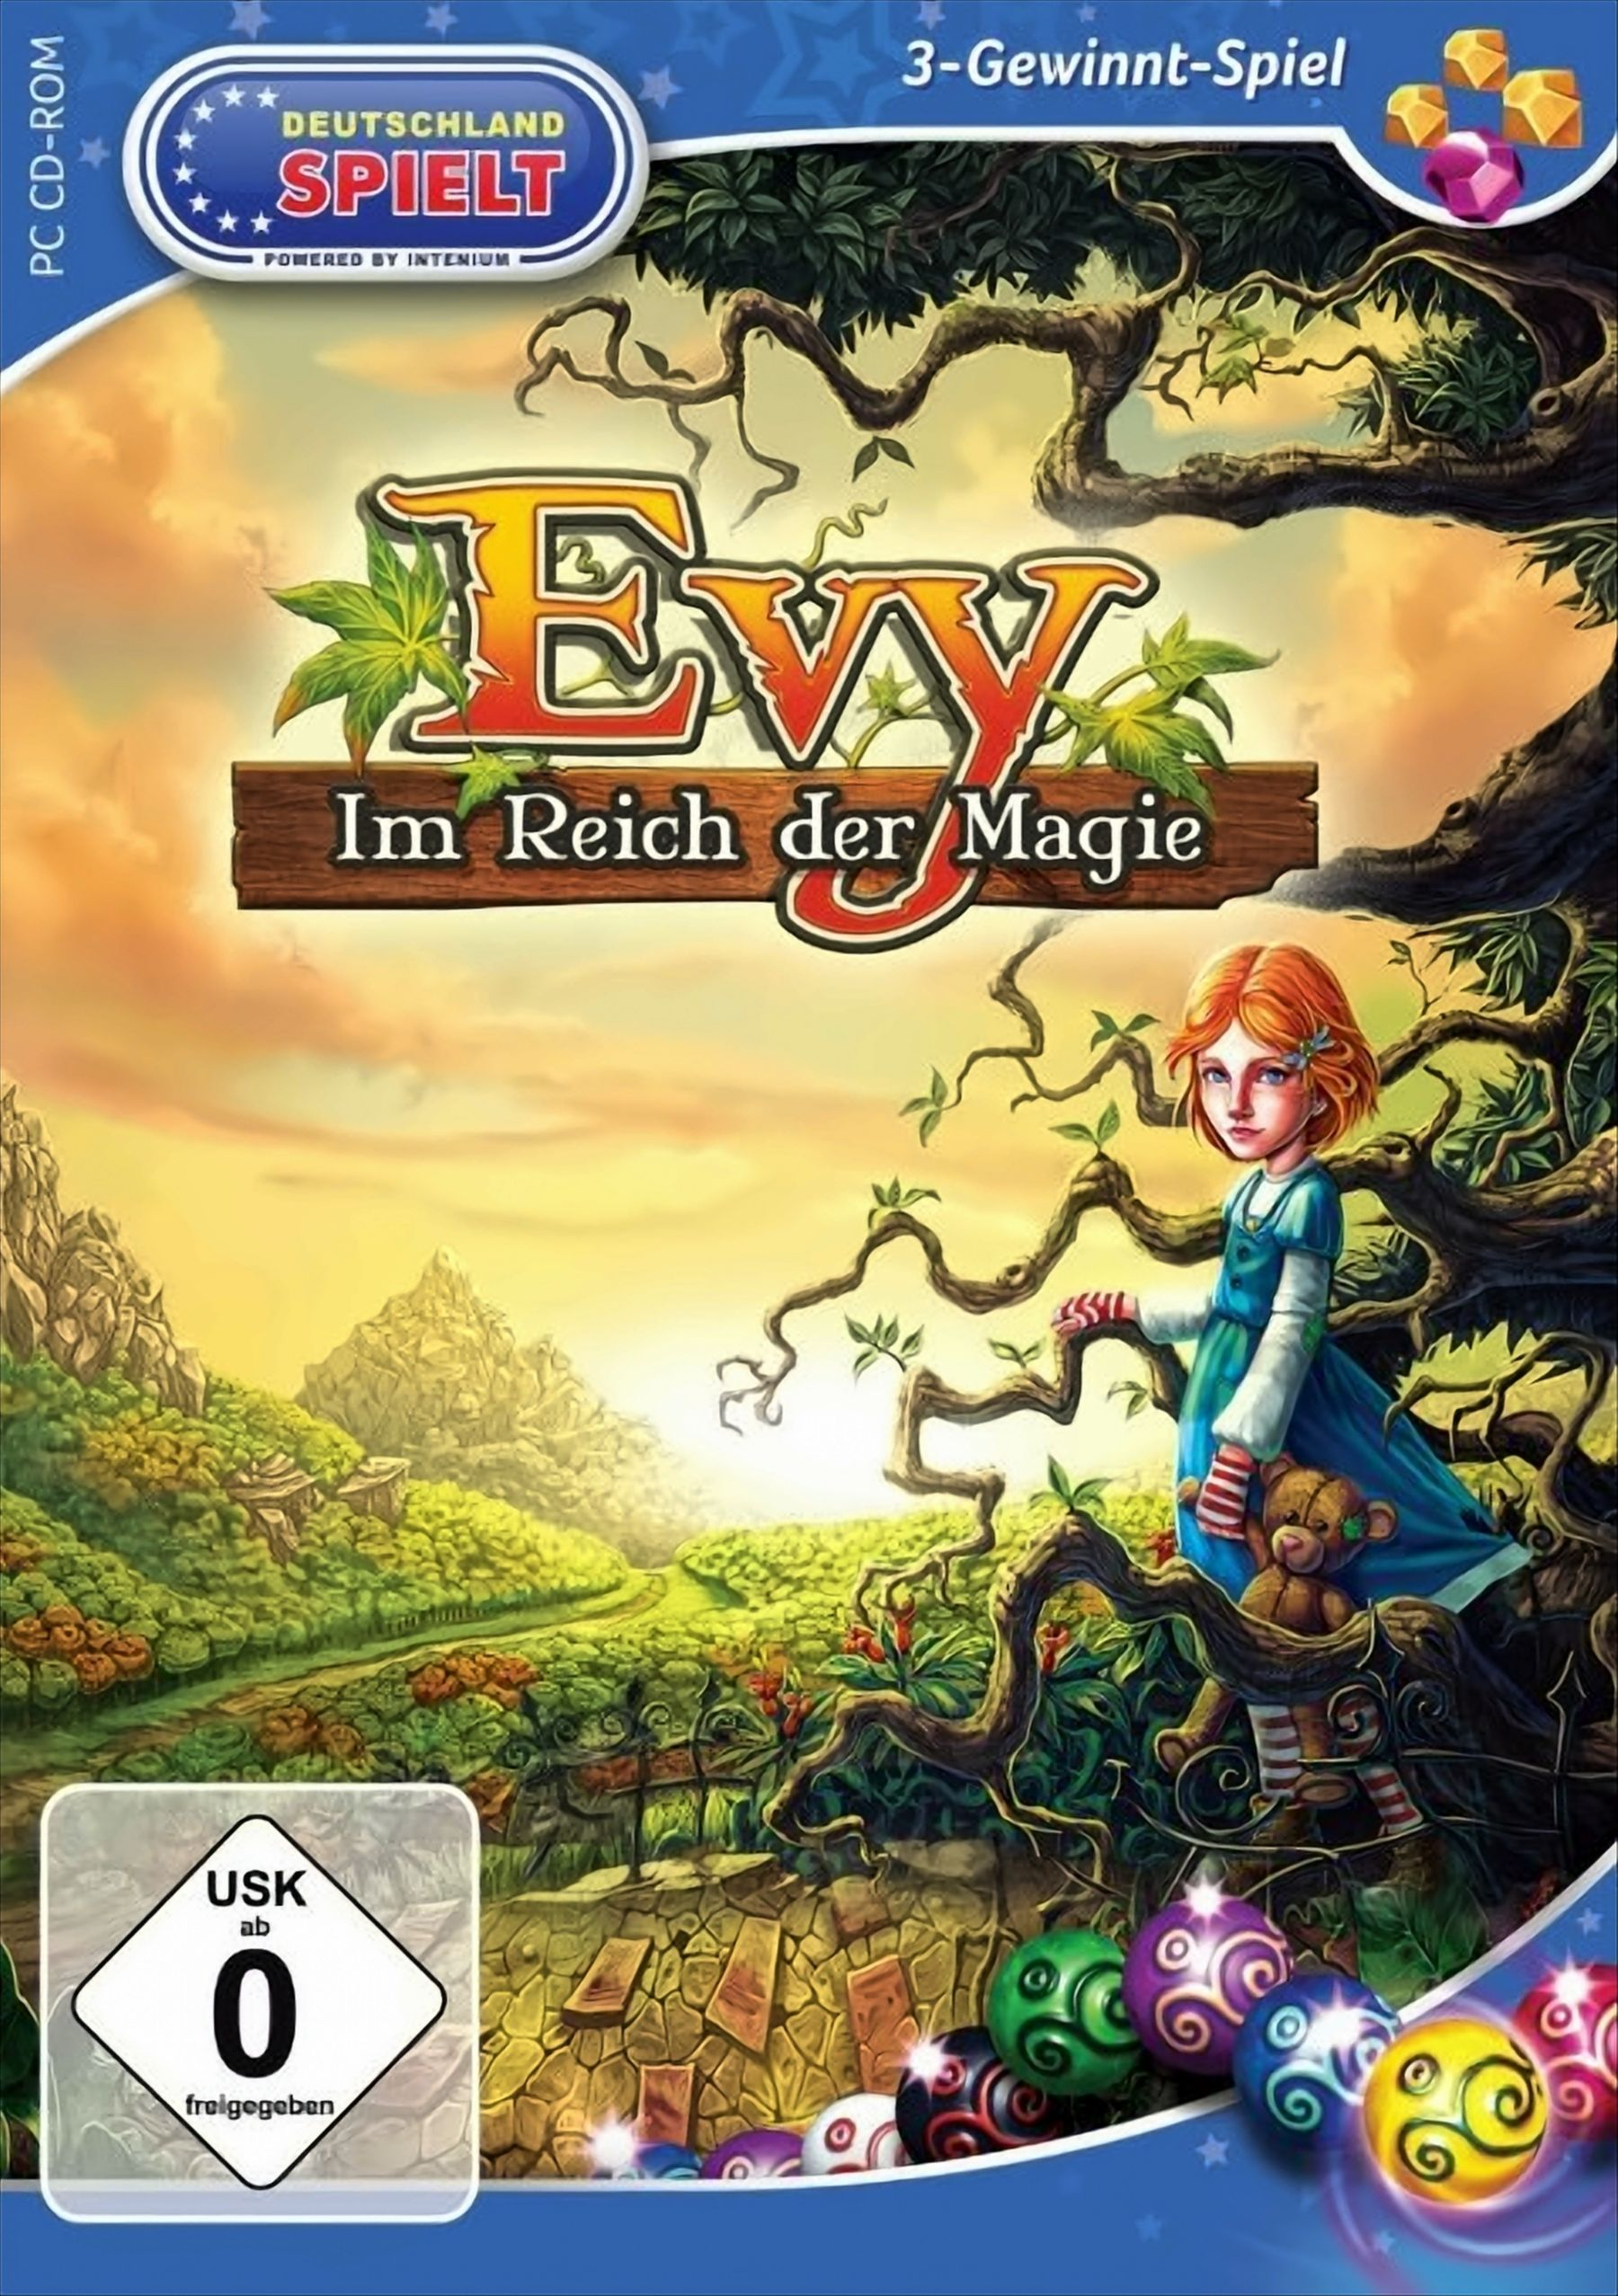 [PC] Magie Reich - - Evy Im der